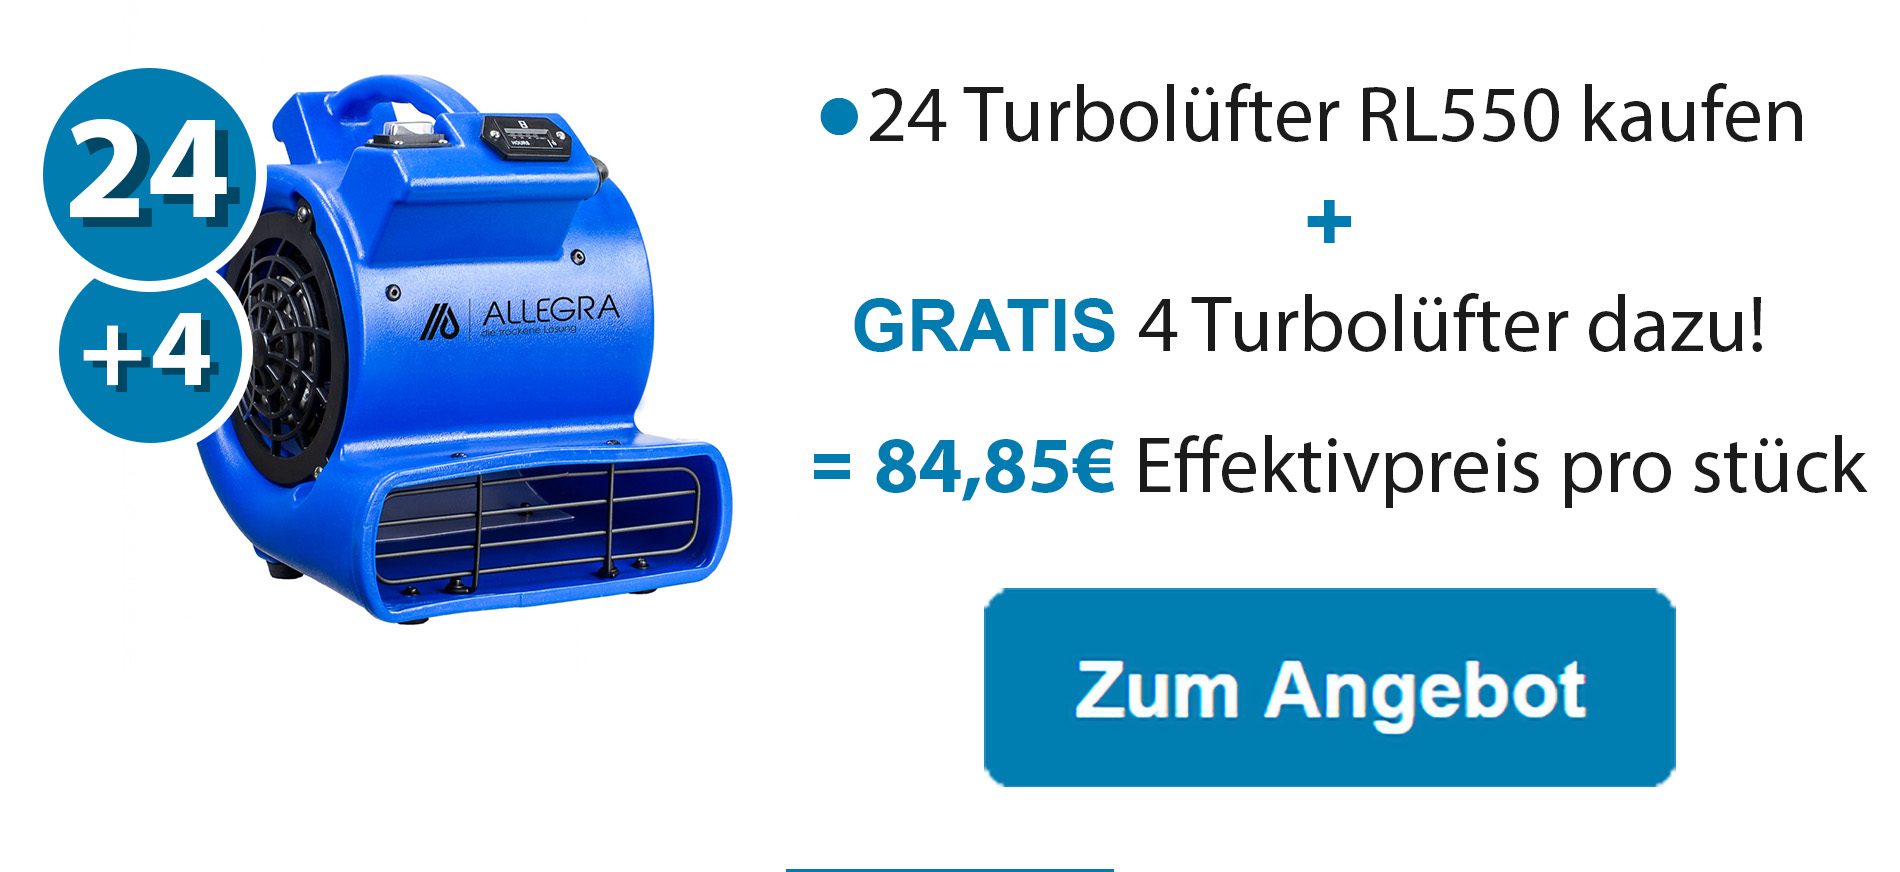 24 Turbolüfter RL550 kaufen +4 GRATIS dazu!